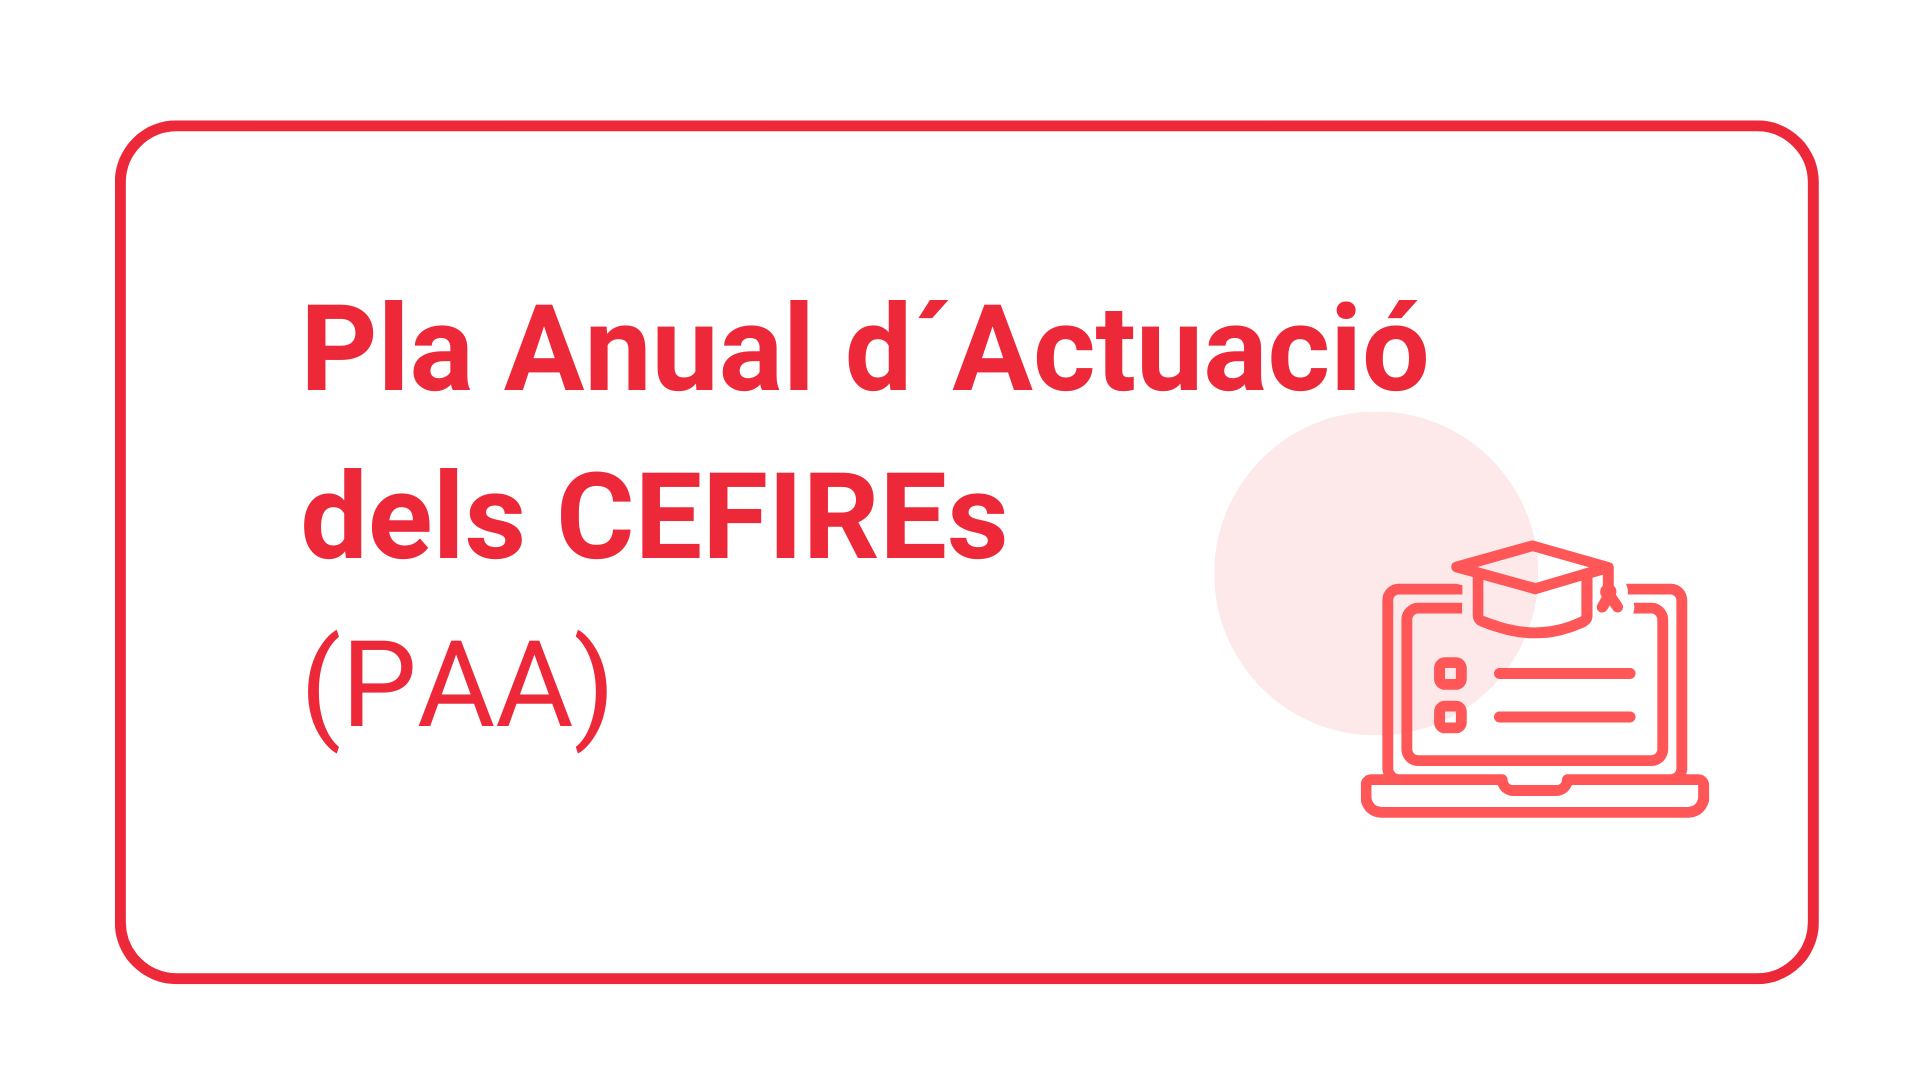 Pla anual d'actuació dels CEFIREs (PAA)